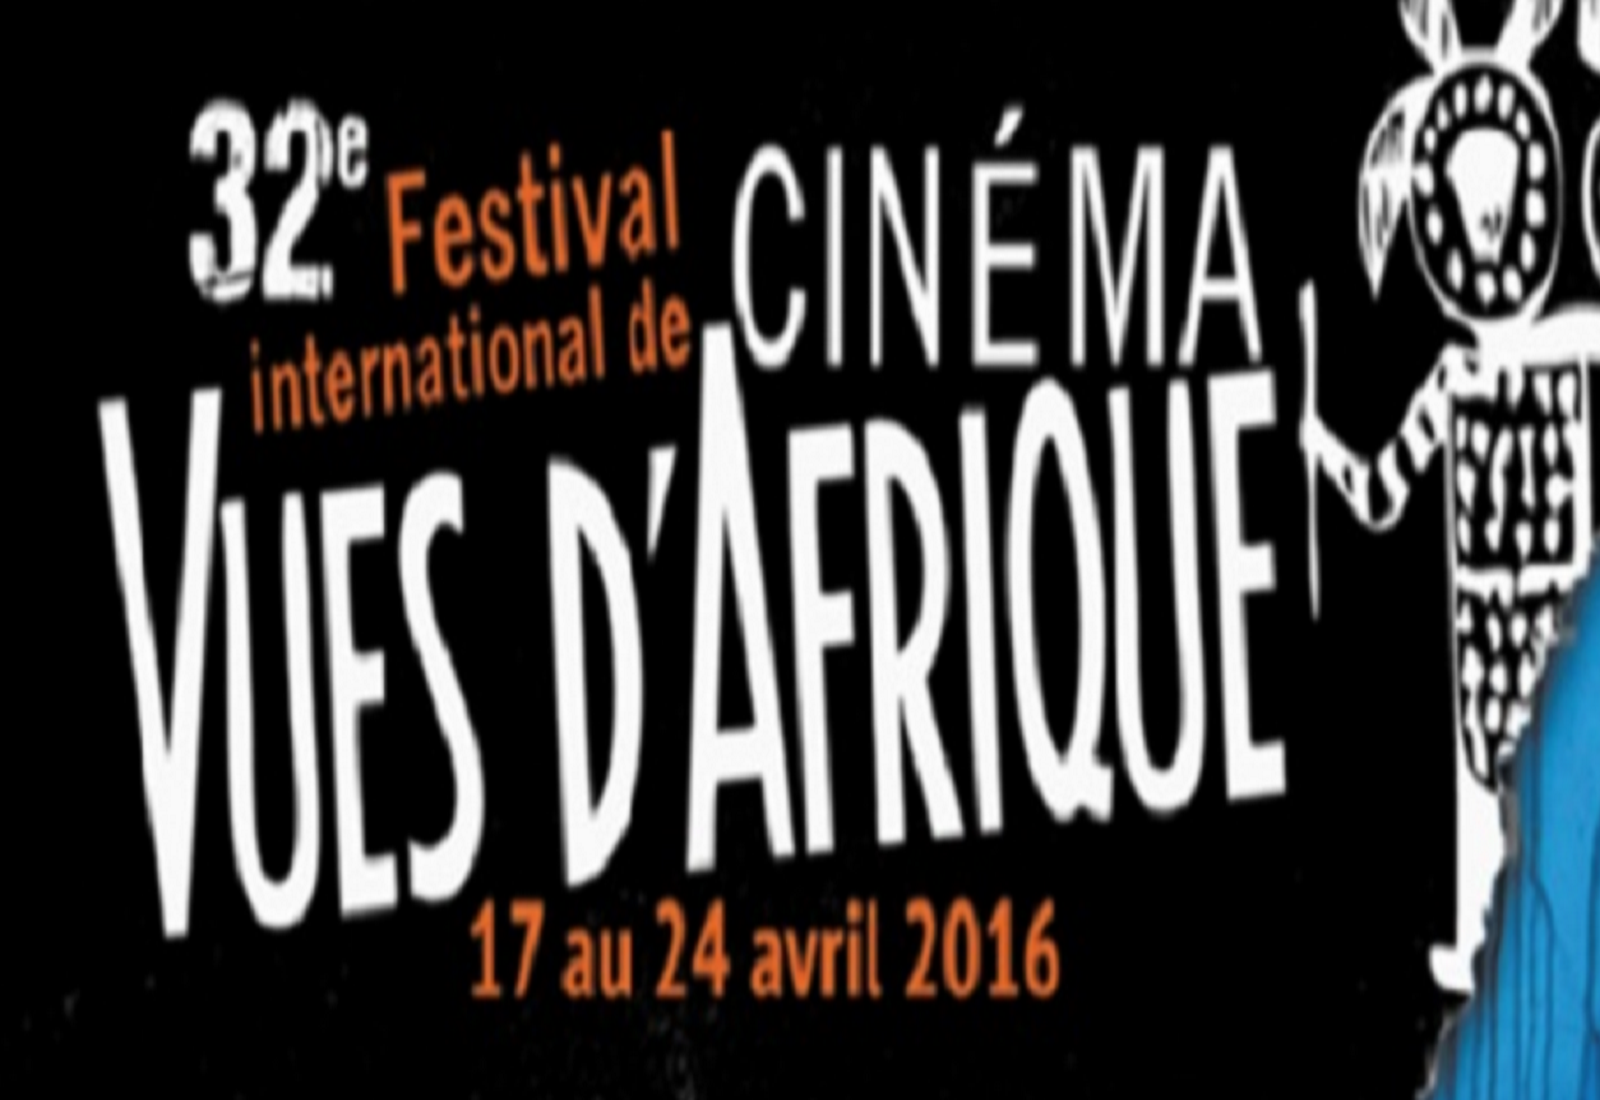 Le Maroc à l’honneur au Festival international de cinéma “Vues d’Afrique” à Montréal